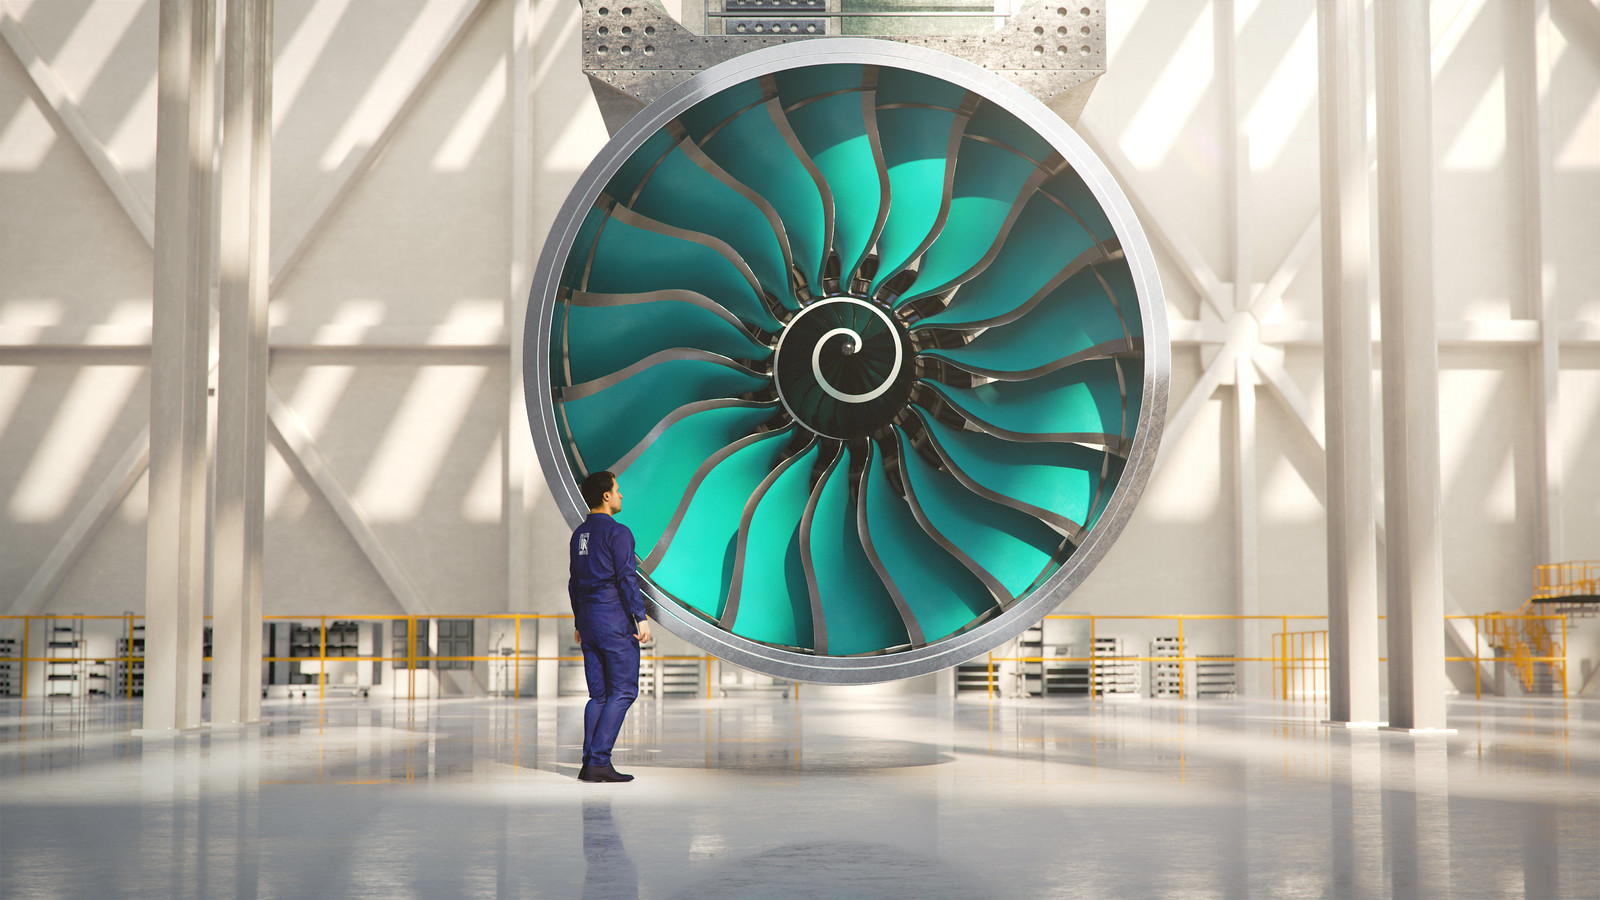 A Rolls-Royce megépíti a világ legnagyobb repülőgép-hajtóművét